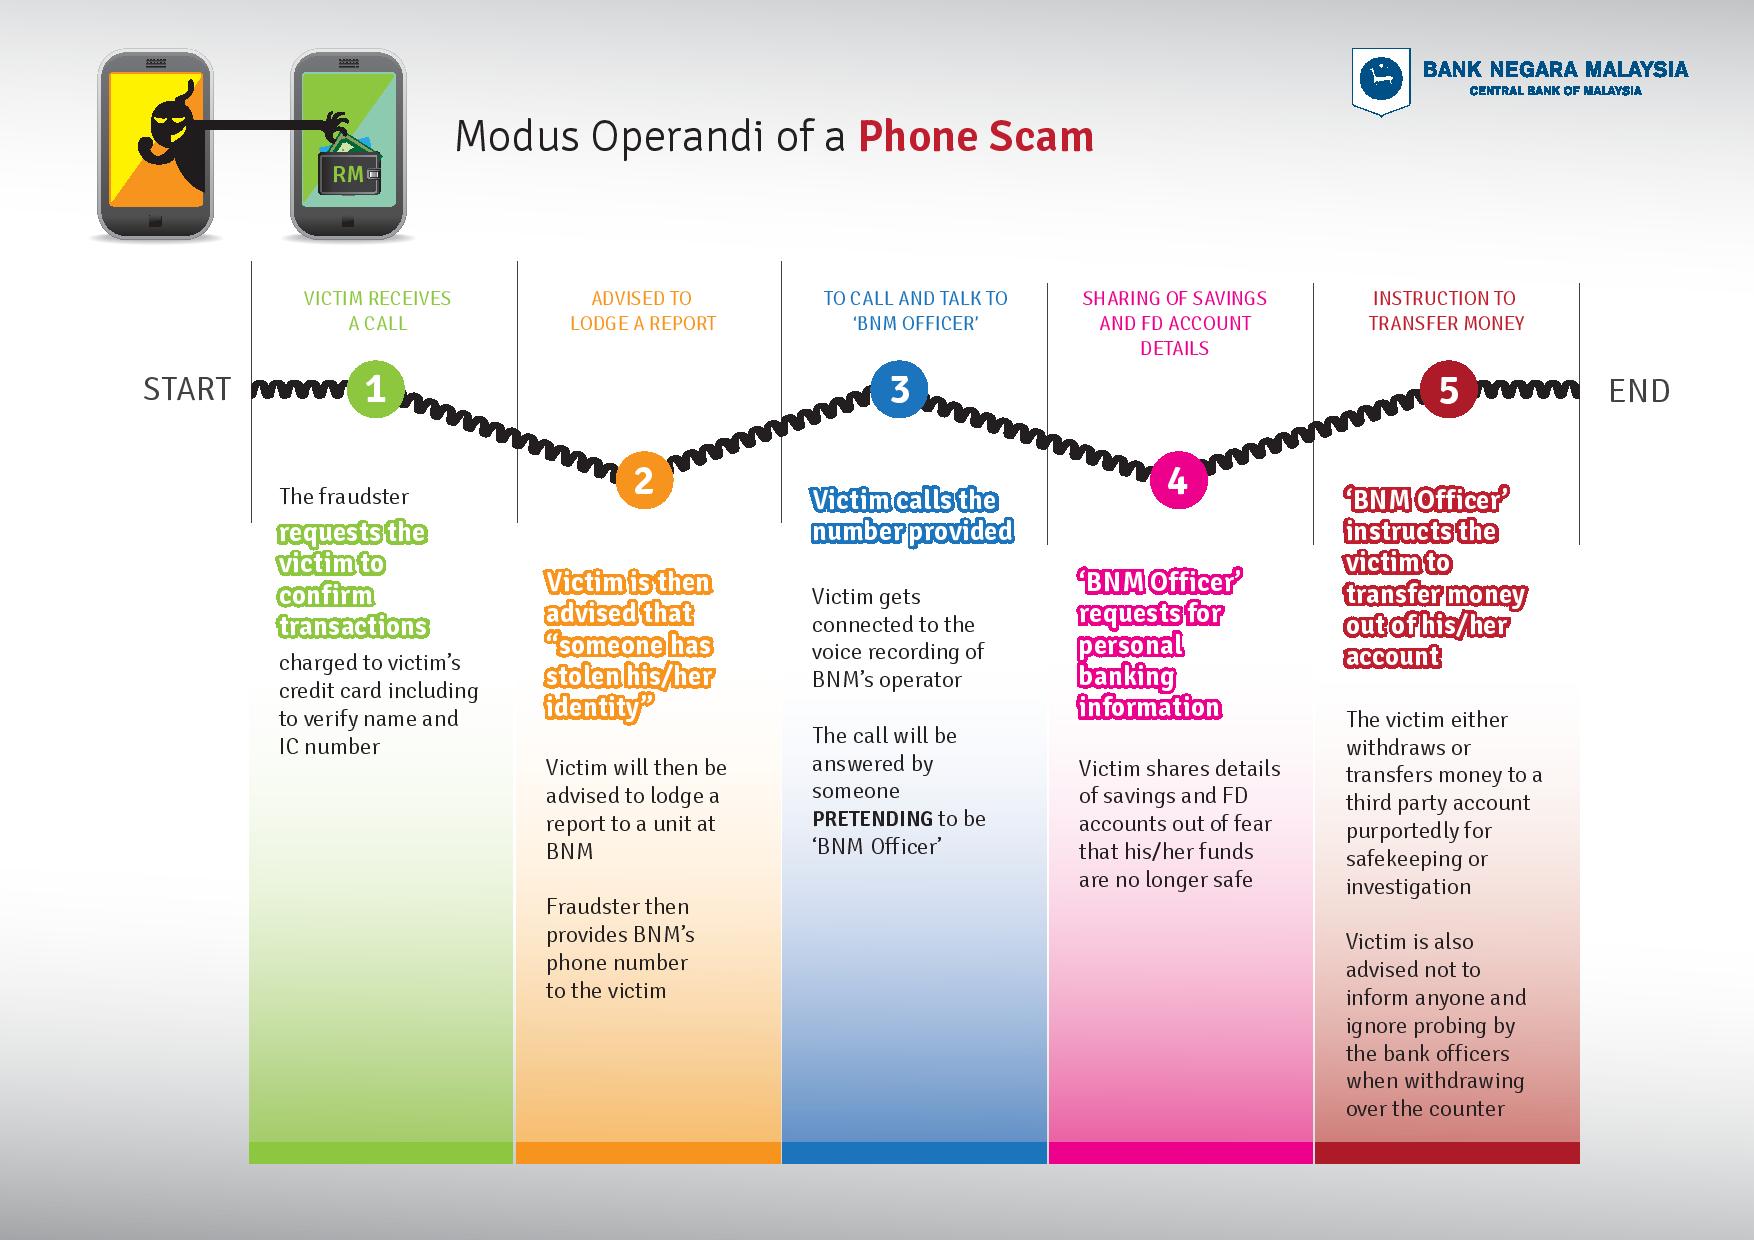 Modus Operandi of Phone Scam